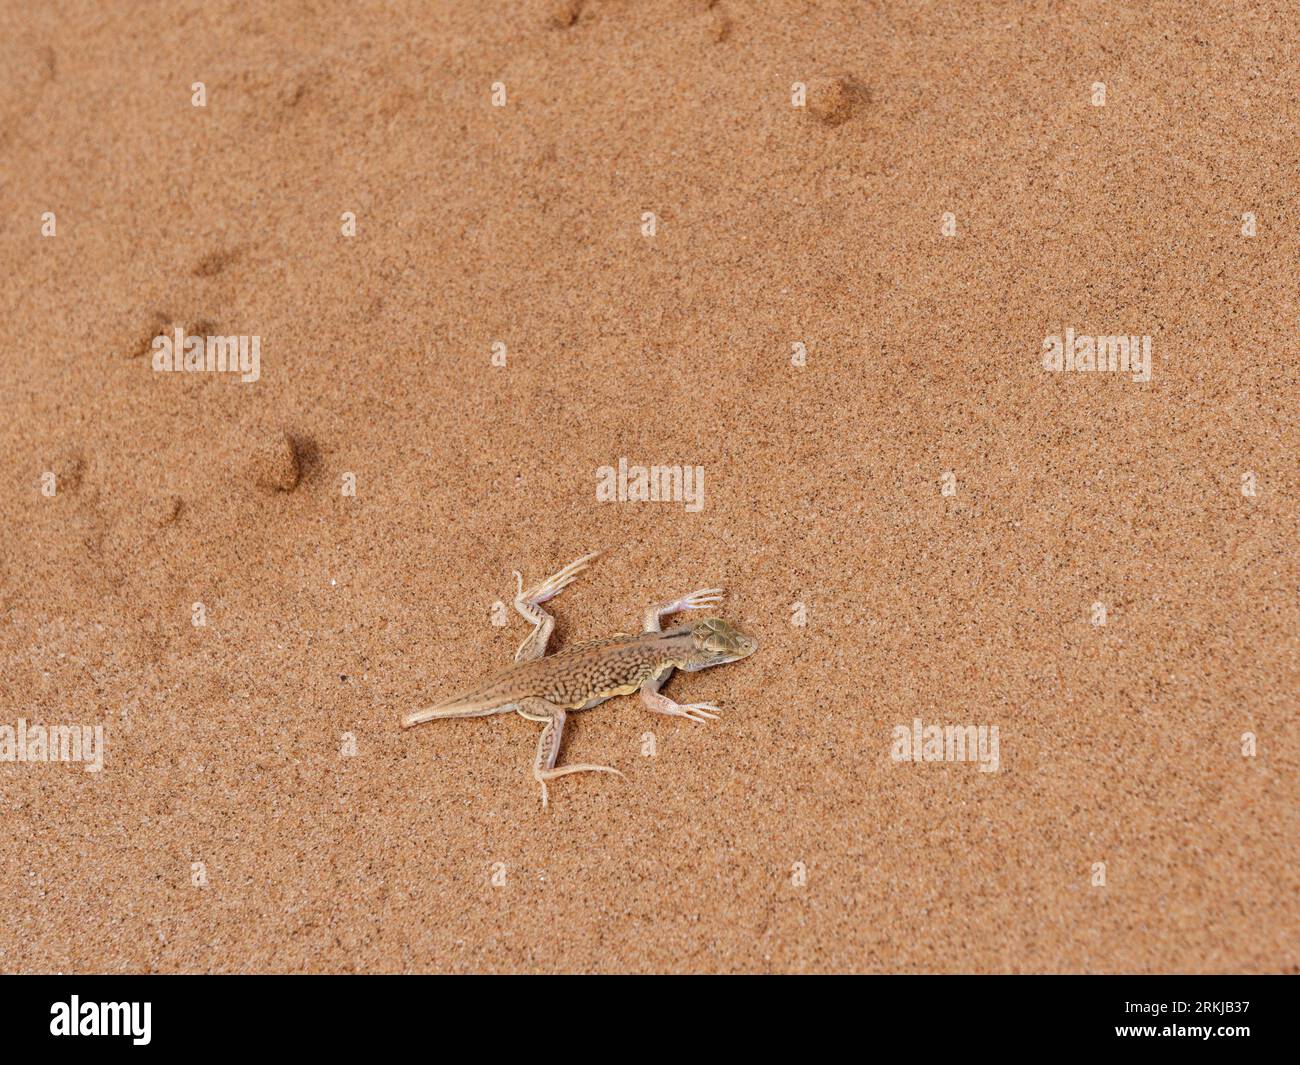 A dunes sagebrush lizard (Sceloporus arenicolus), in the Namib Desert, Namibia. Stock Photo